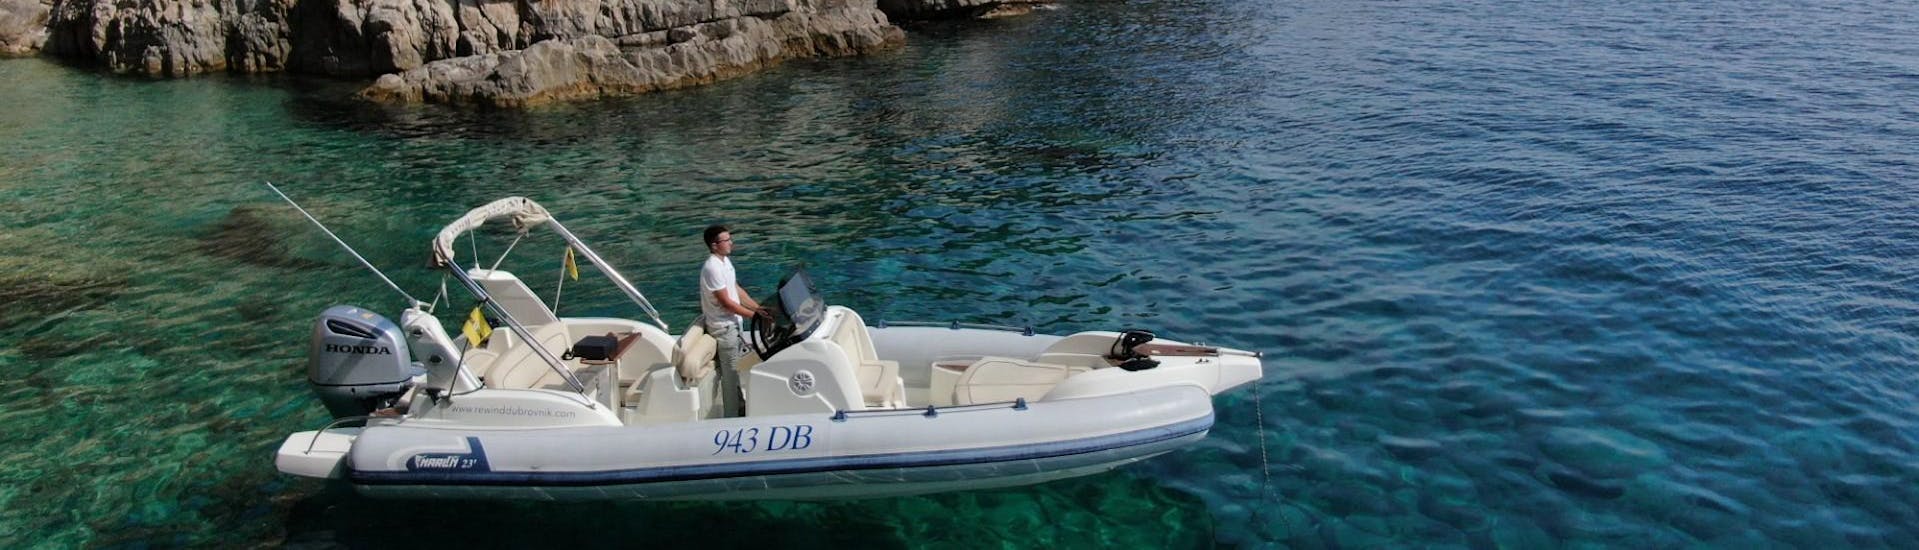 Gita privata in barca da Dubrovnik a Meleda con bagno in mare e osservazione della fauna selvatica.